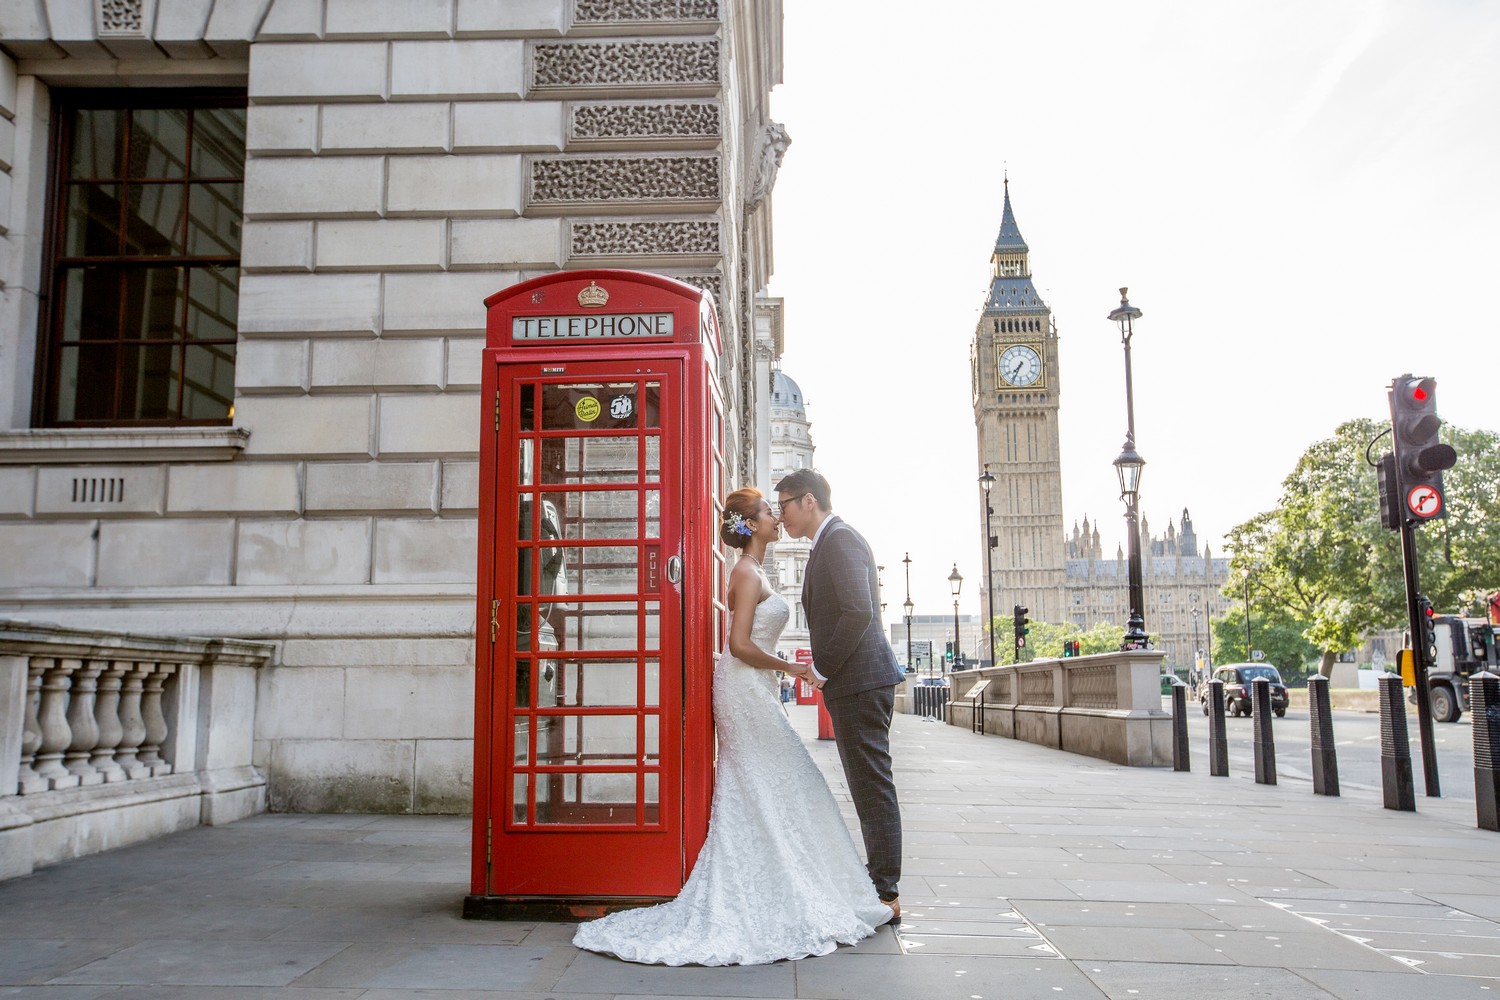 英國拍婚紗,倫敦婚紗照,英國海外婚紗,倫敦婚紗,旅拍婚紗,出國拍婚紗